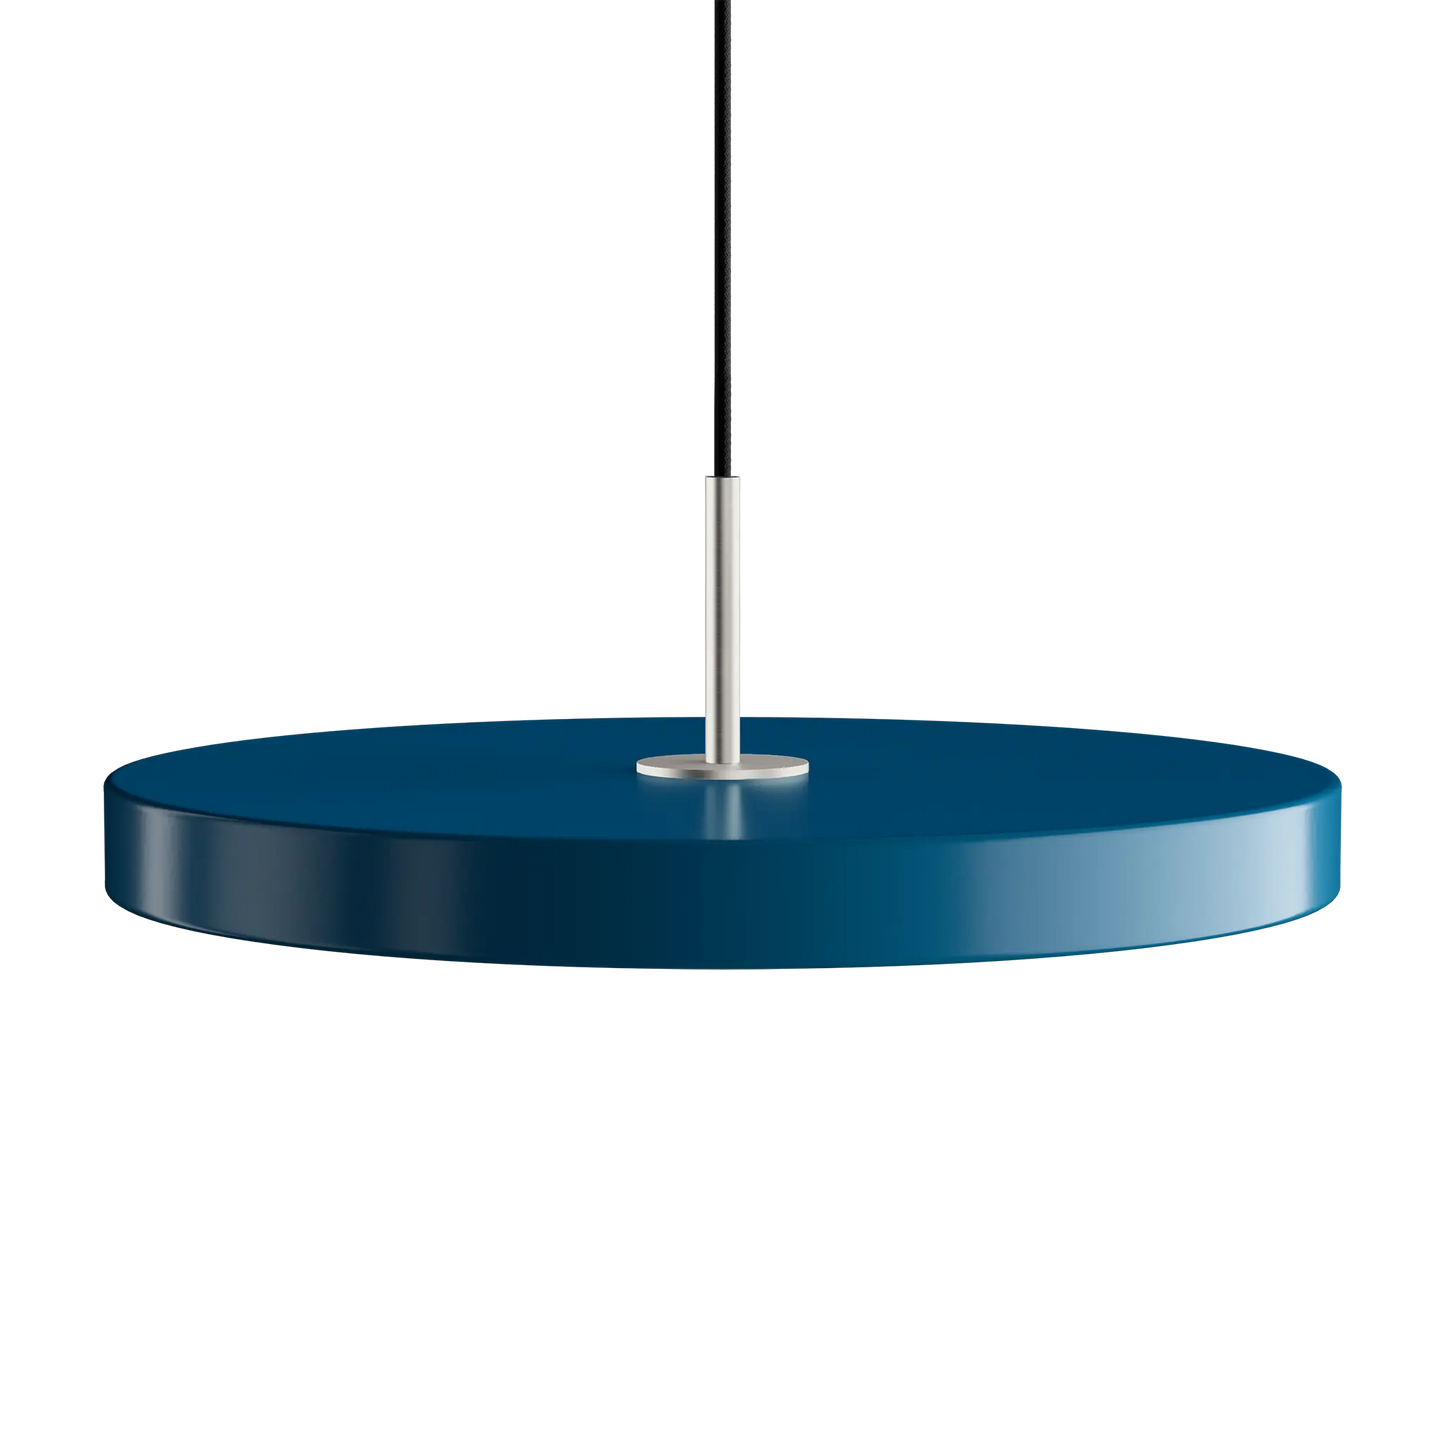 Asteria Medium taklampa med ståltop i färgen Petrol Blue från Umage